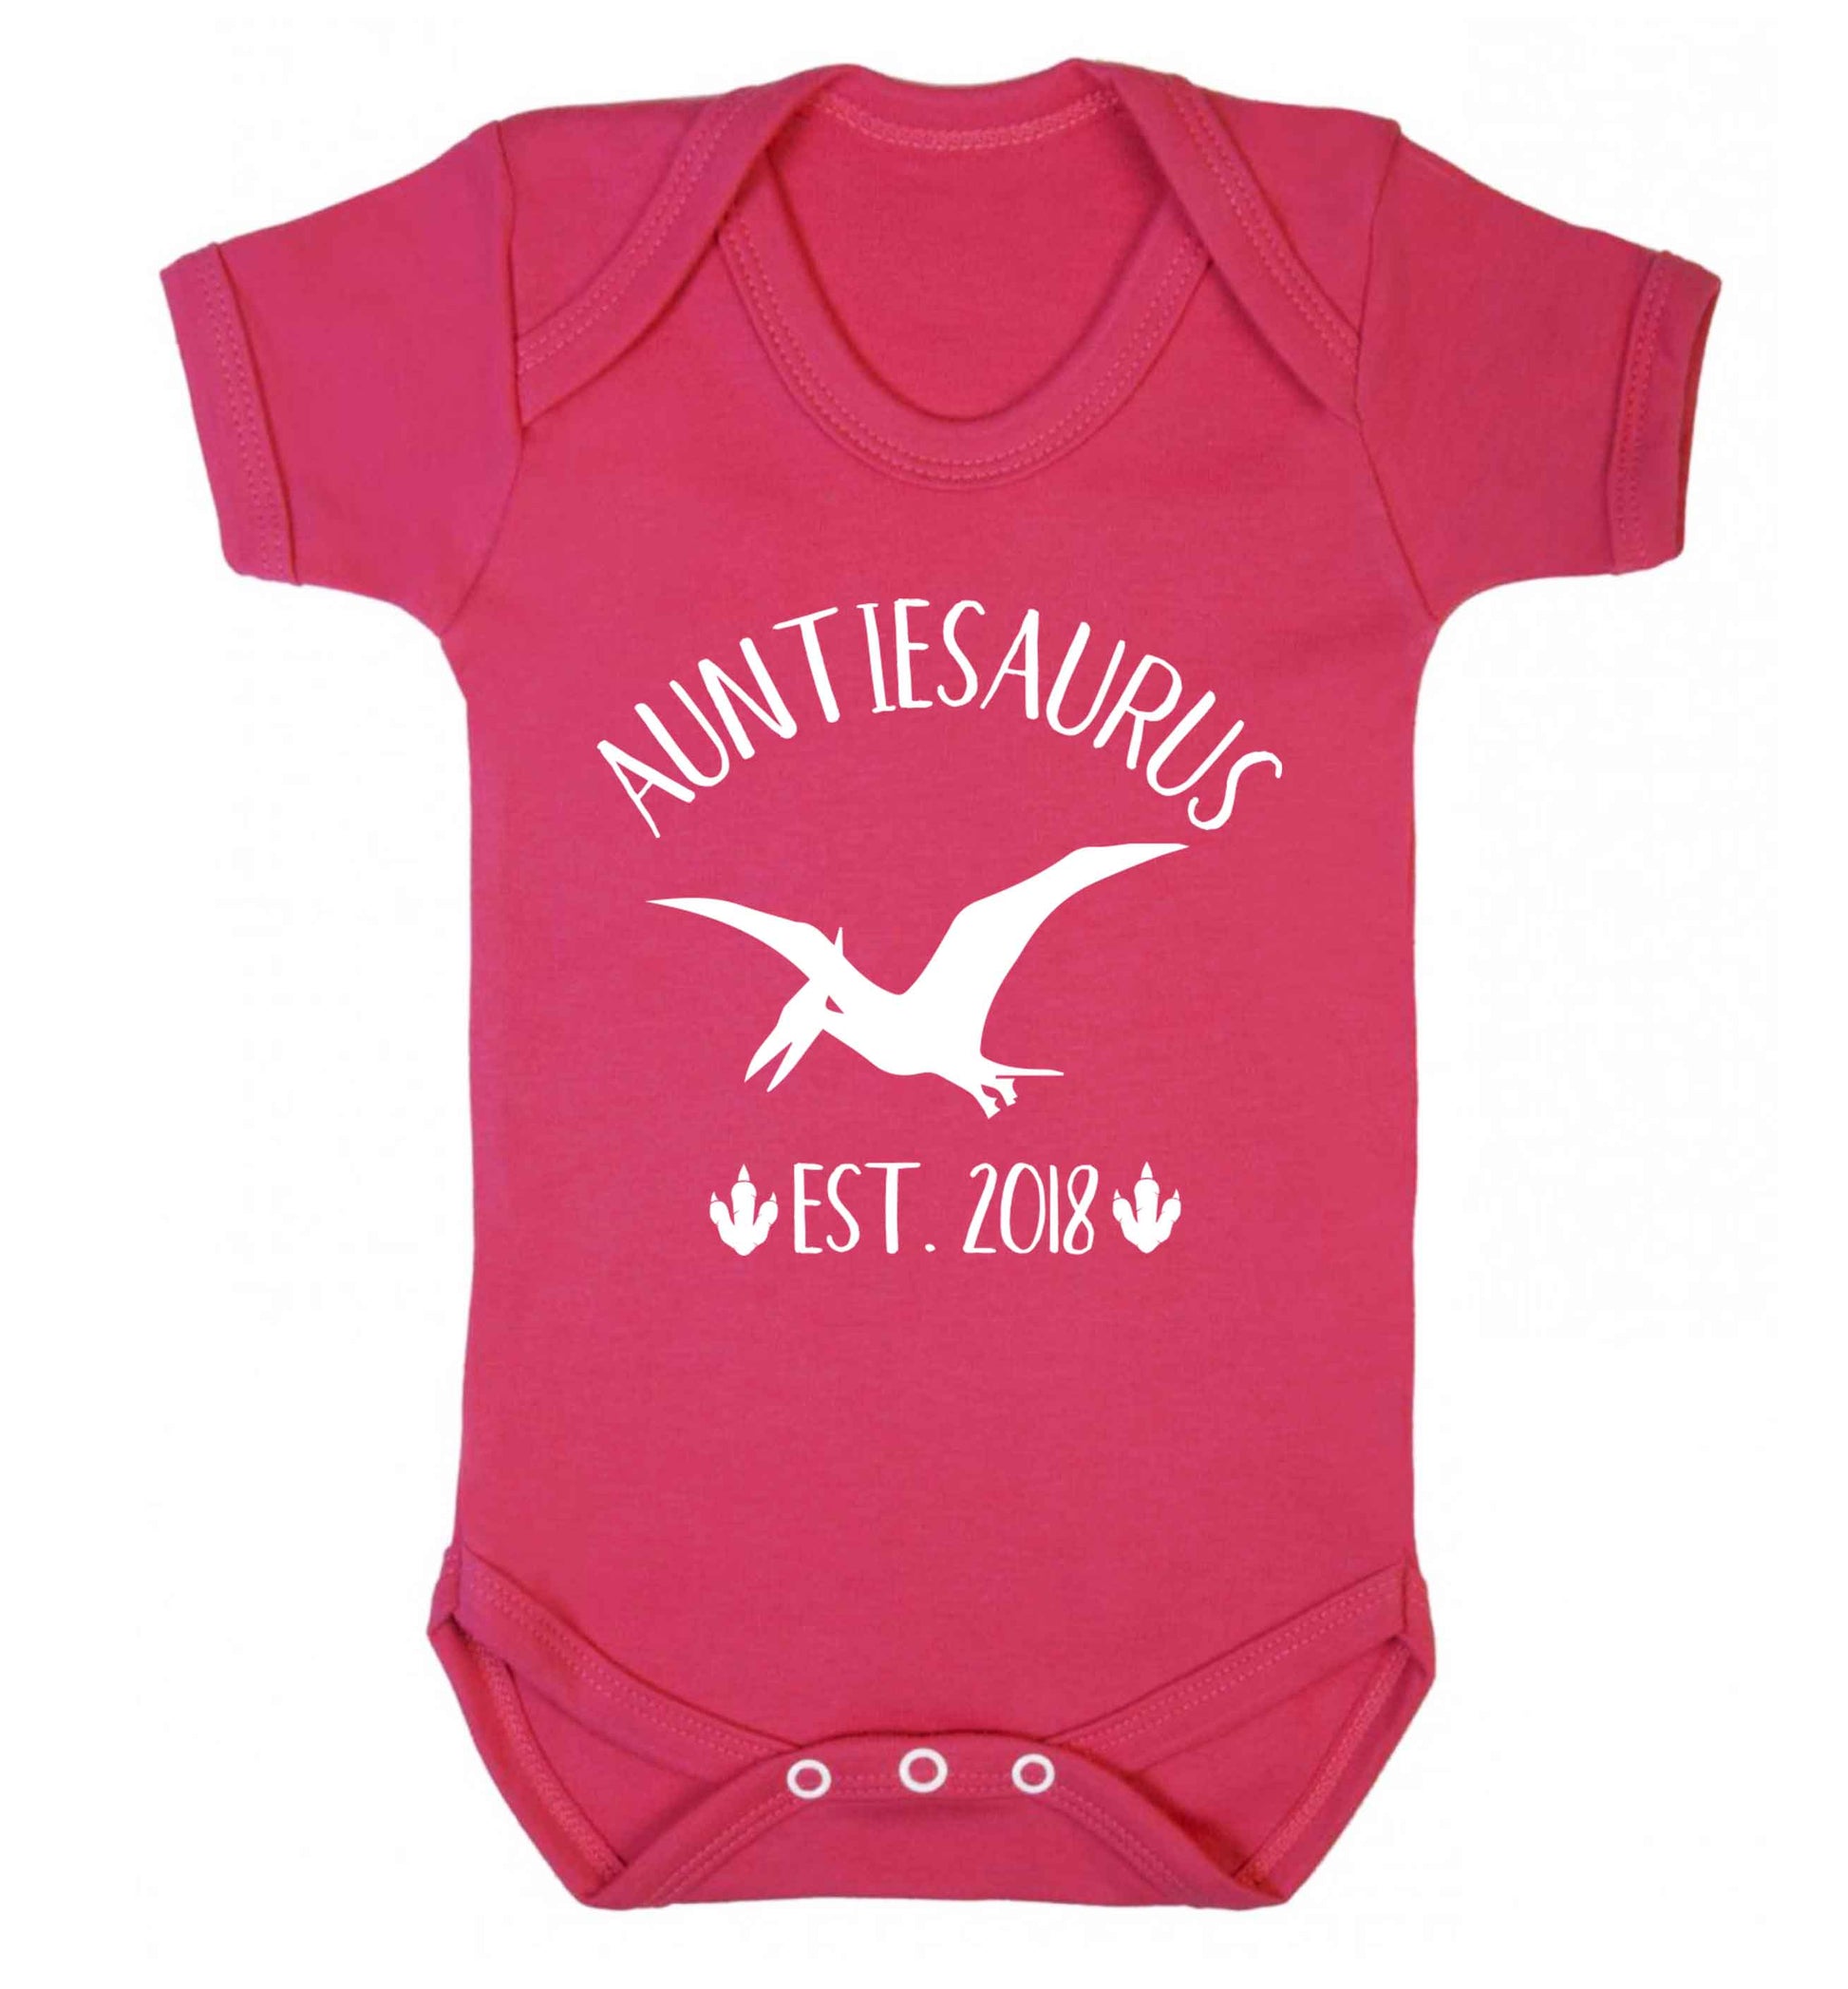 Personalised auntiesaurus since (custom date) Baby Vest dark pink 18-24 months